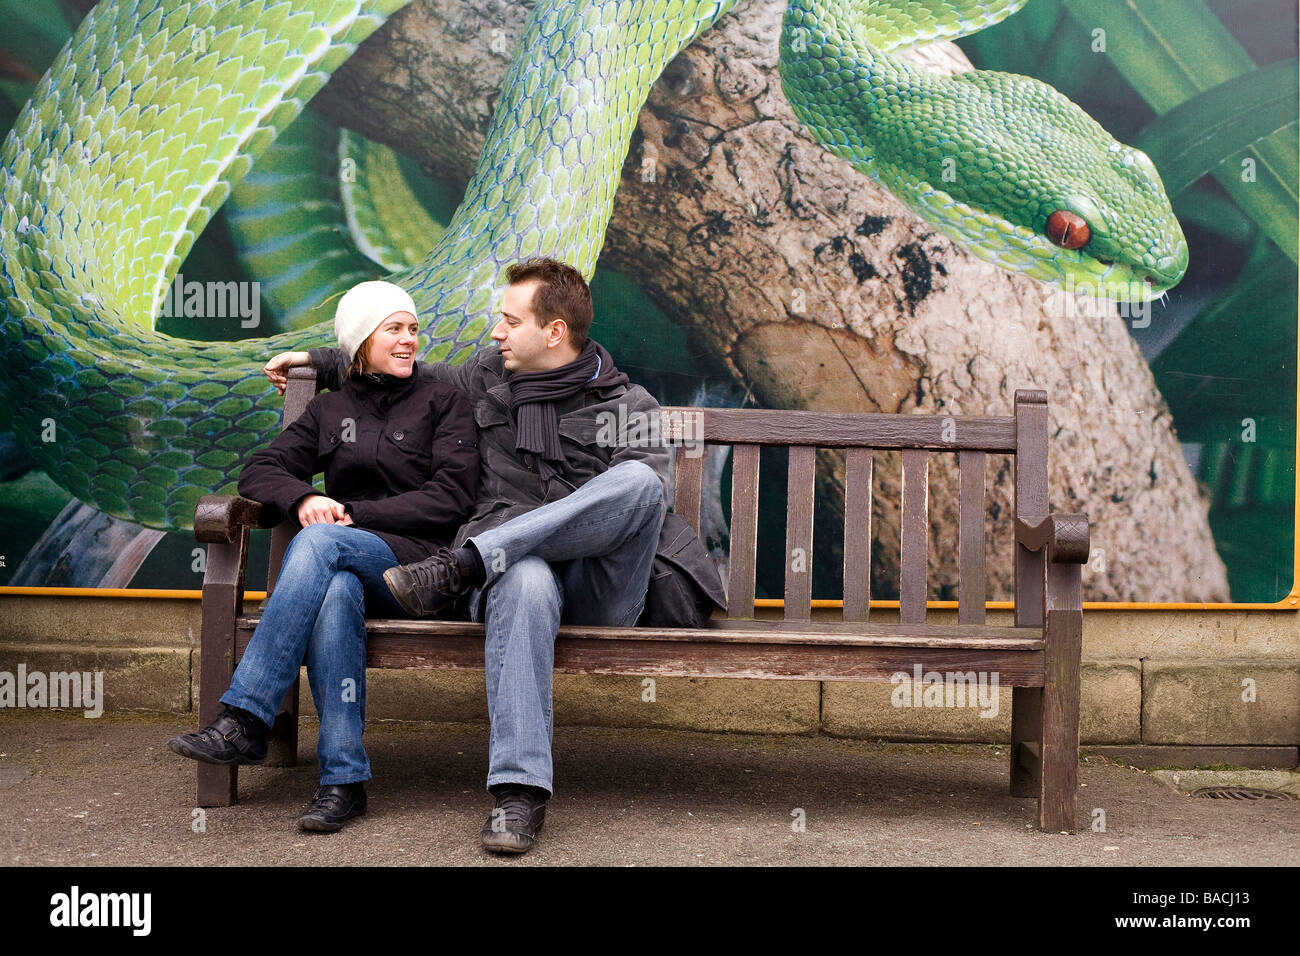 Royaume-uni, Londres, Regent's Park, le zoo, le couple en face de la maison des reptiles Banque D'Images